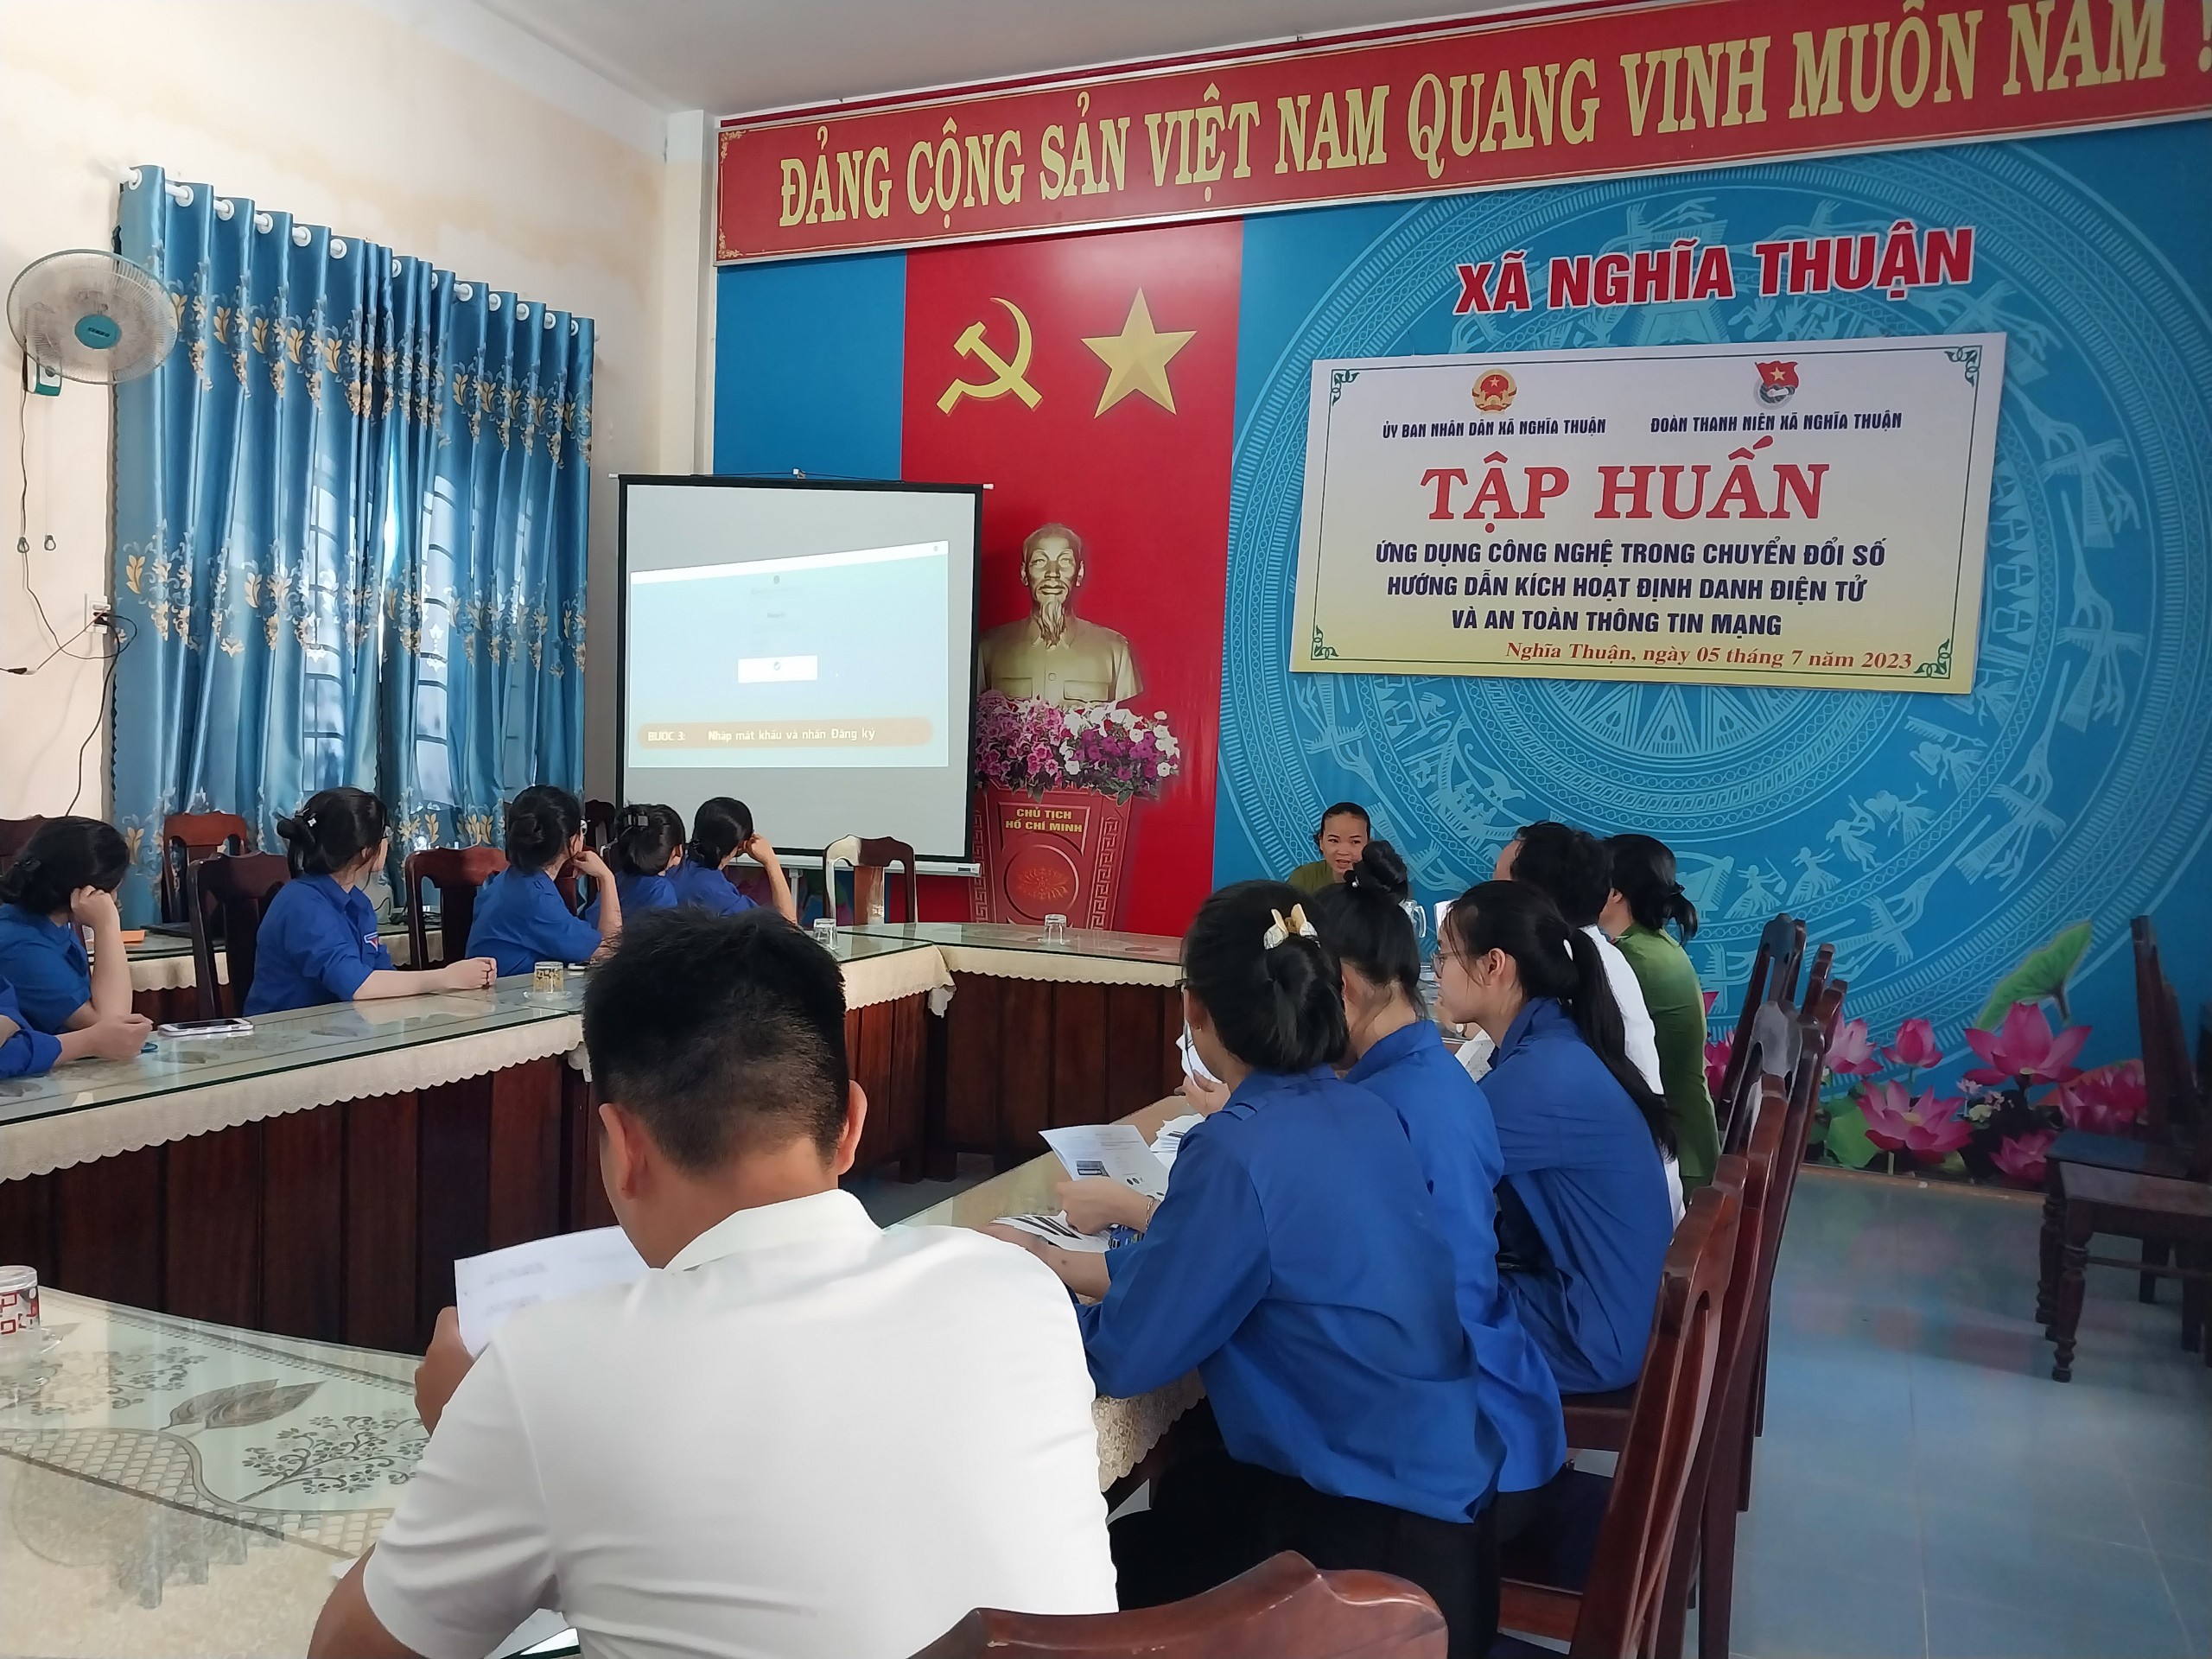 UBND xã Nghĩa Thuận phối hợp với Đoàn Thanh niên xã tổ chức tập huấn ứng dụng công nghệ thông tin trong chuyển đổi số và an toàn thông tin mạng cho tổ công nghệ số và đội tình nguyện của Đoàn thanh niên xã